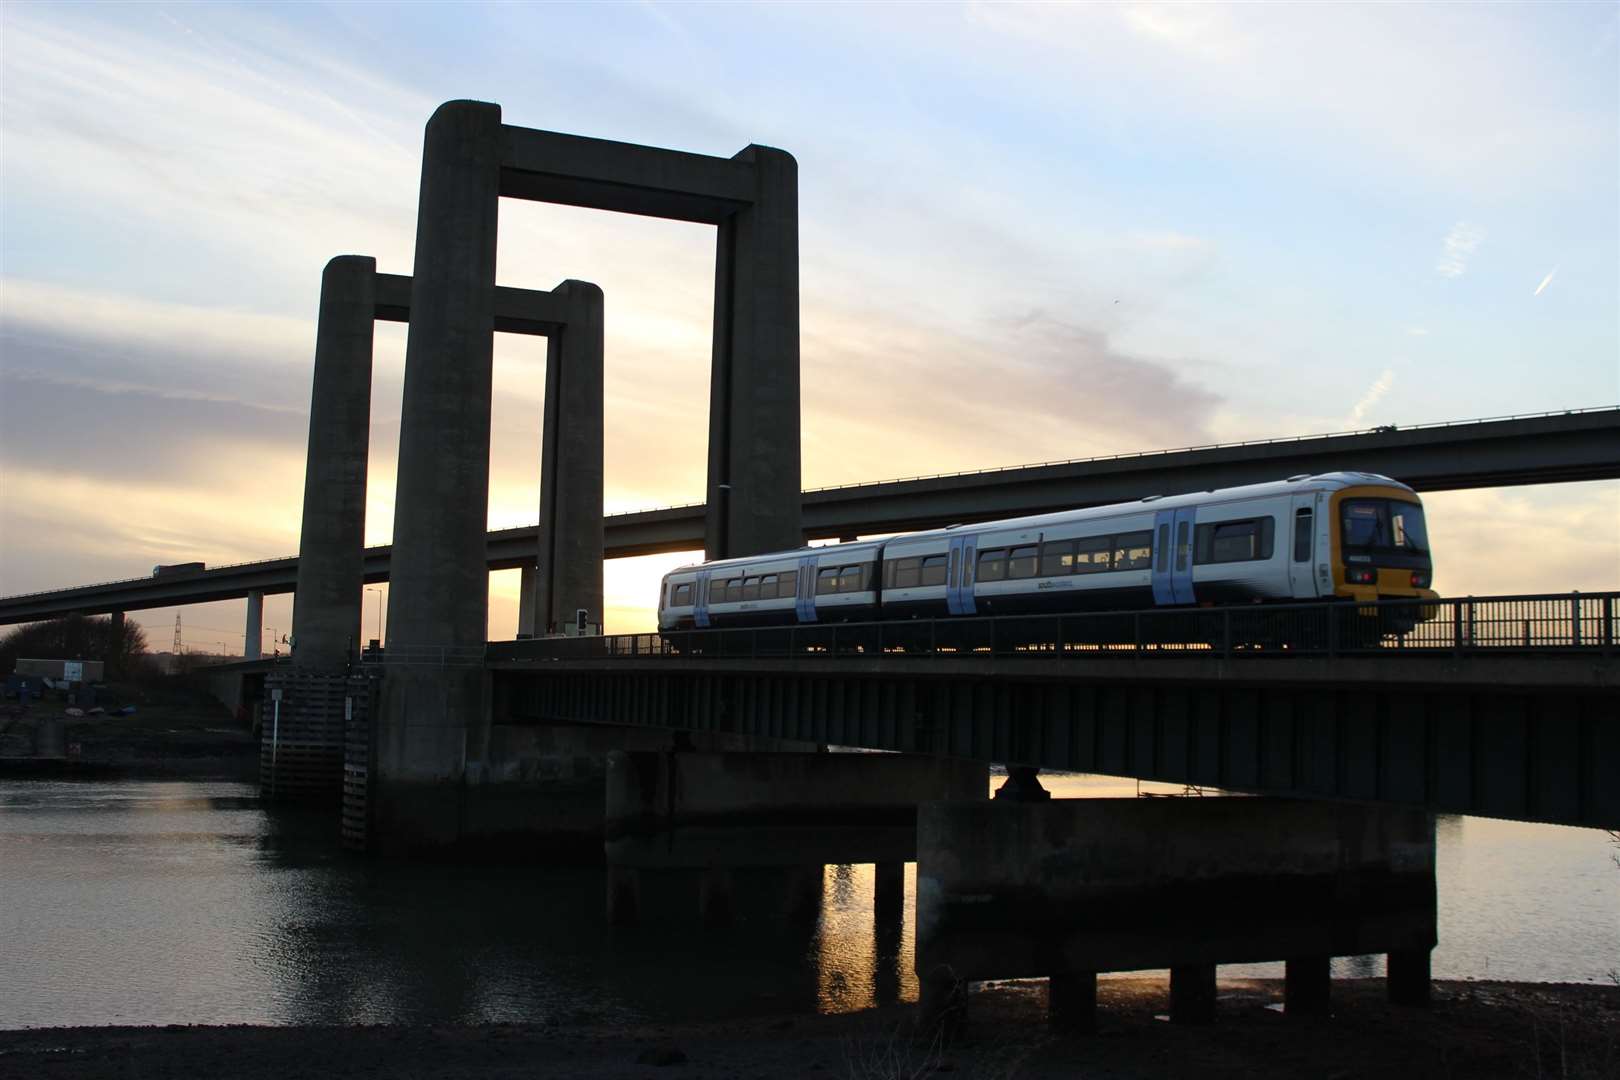 A train crossing the Kingsferry Bridge, Sheppey. Stock photo: KM John Nurden (52453610)